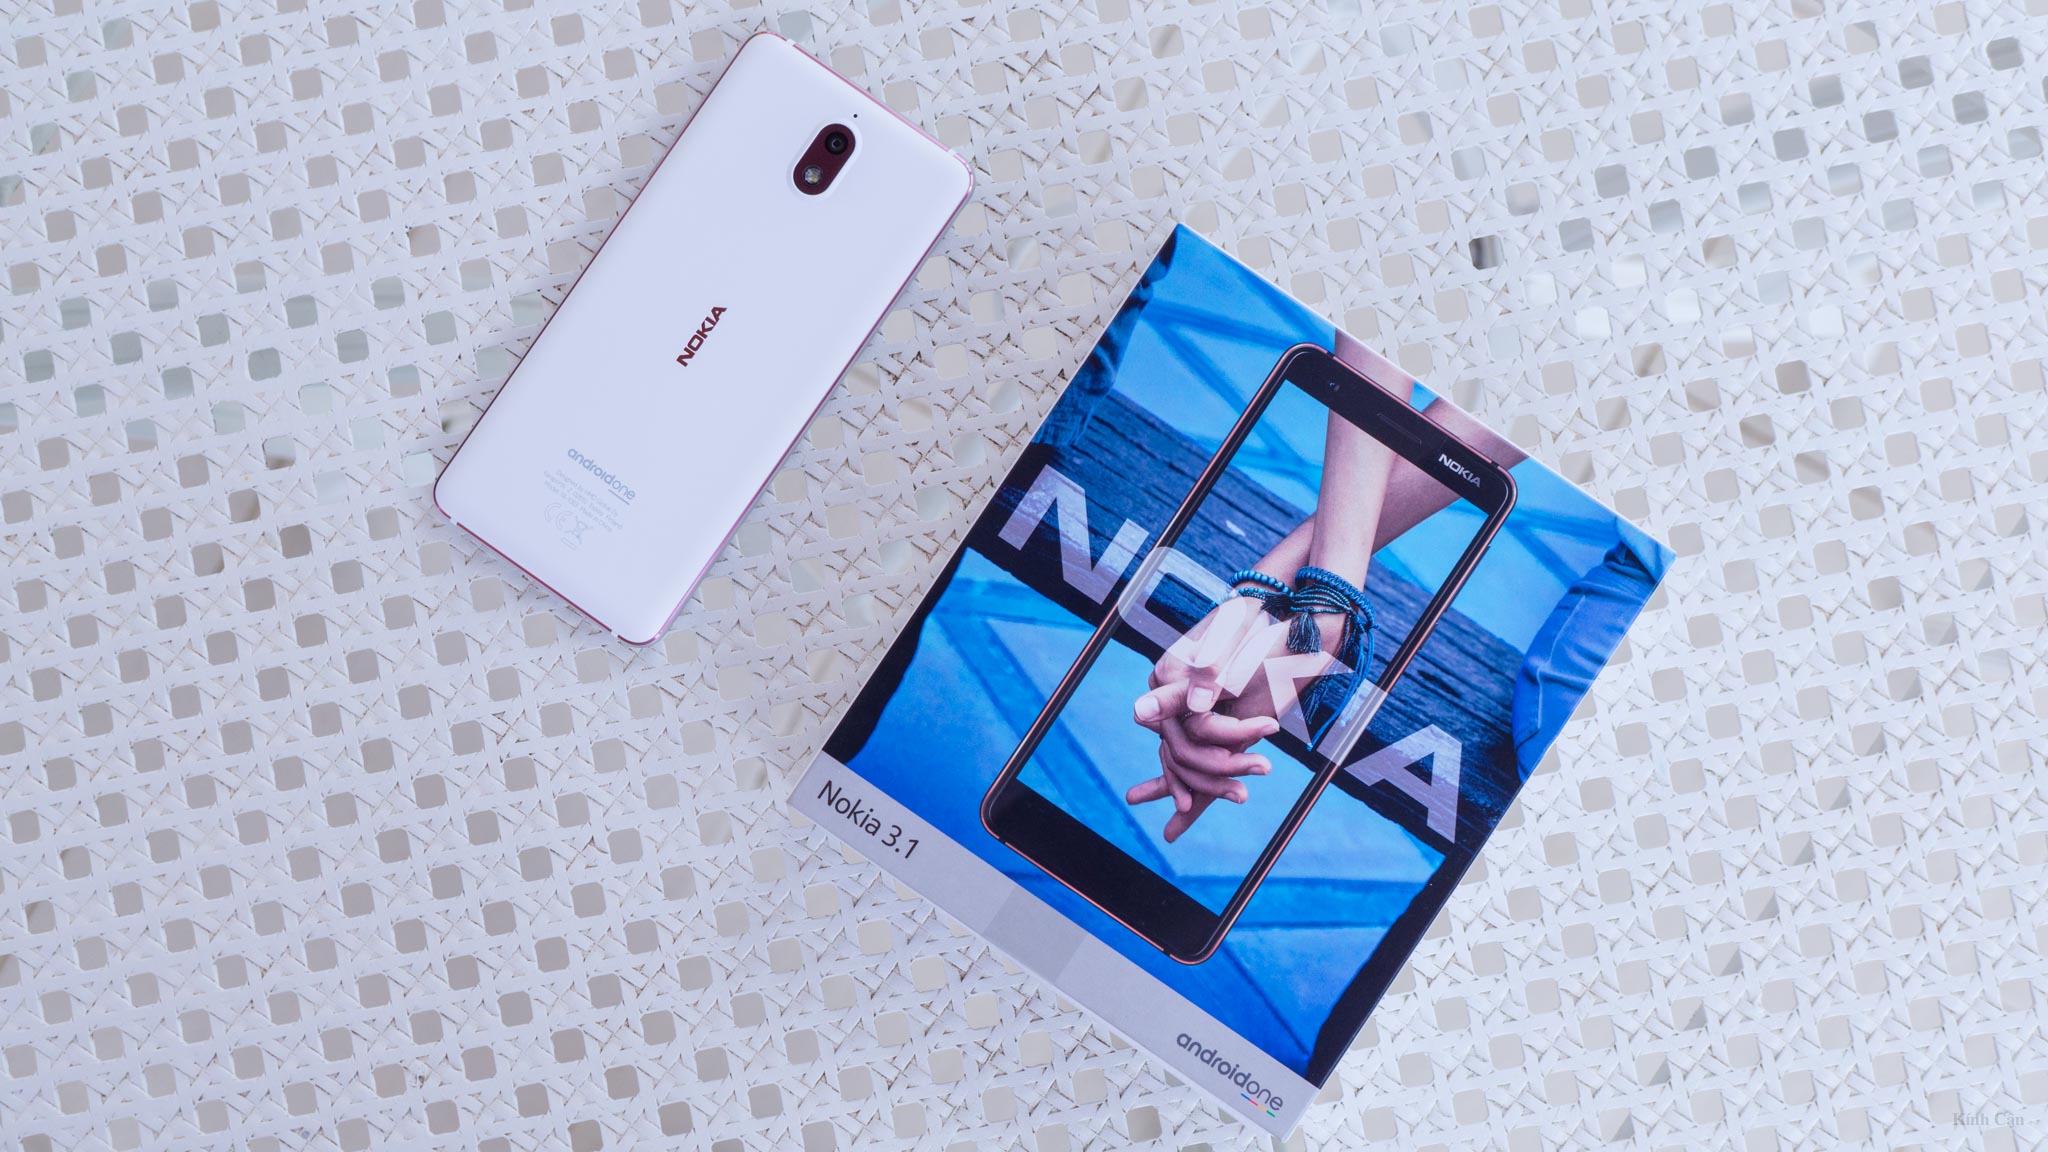 Mở hộp Nokia 3.1 phiên bản 2018: nâng cấp camera, cấu hình, pin và thiết kế hoàn thiện tốt hơn